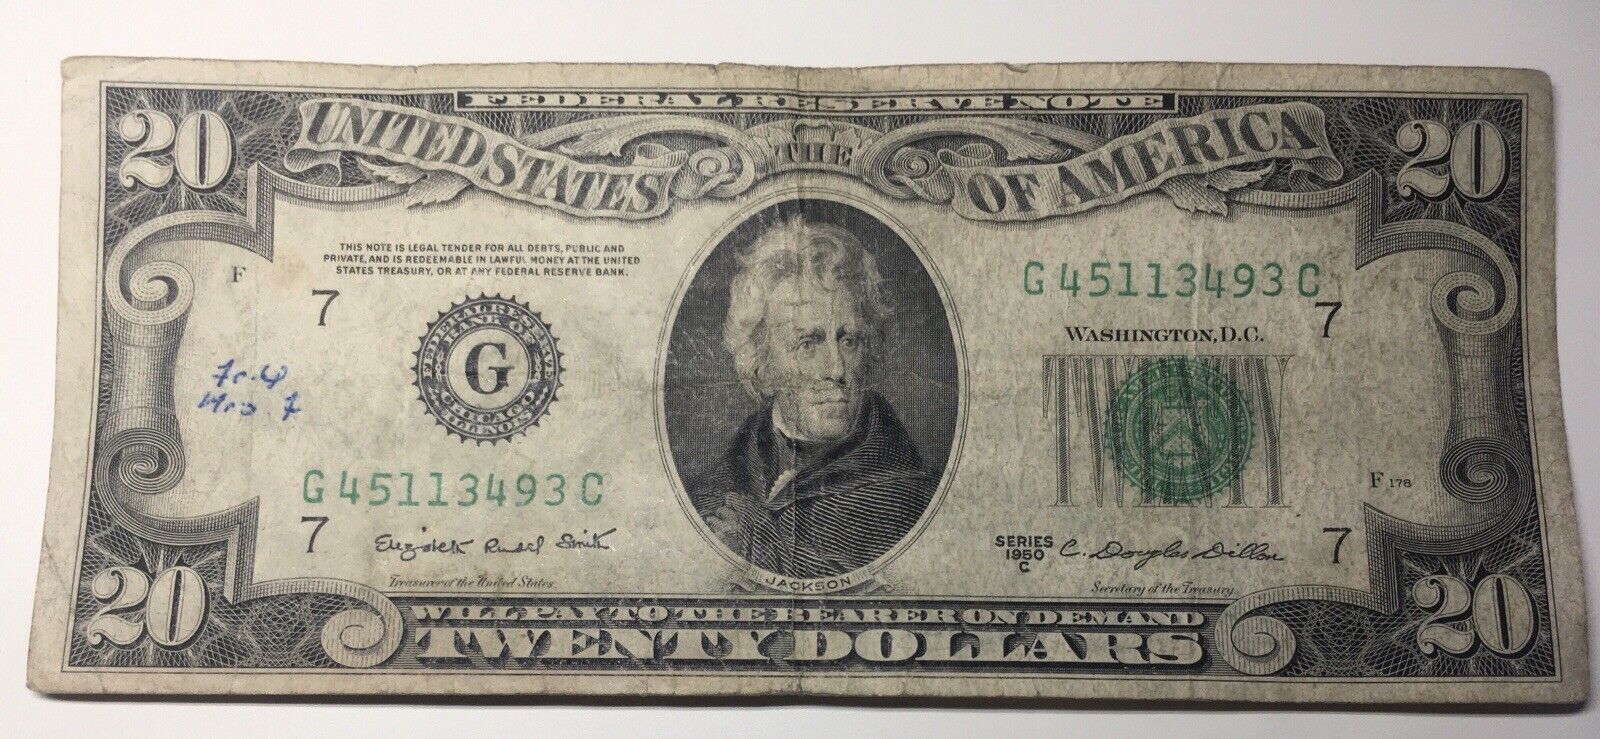 $20 in 1950